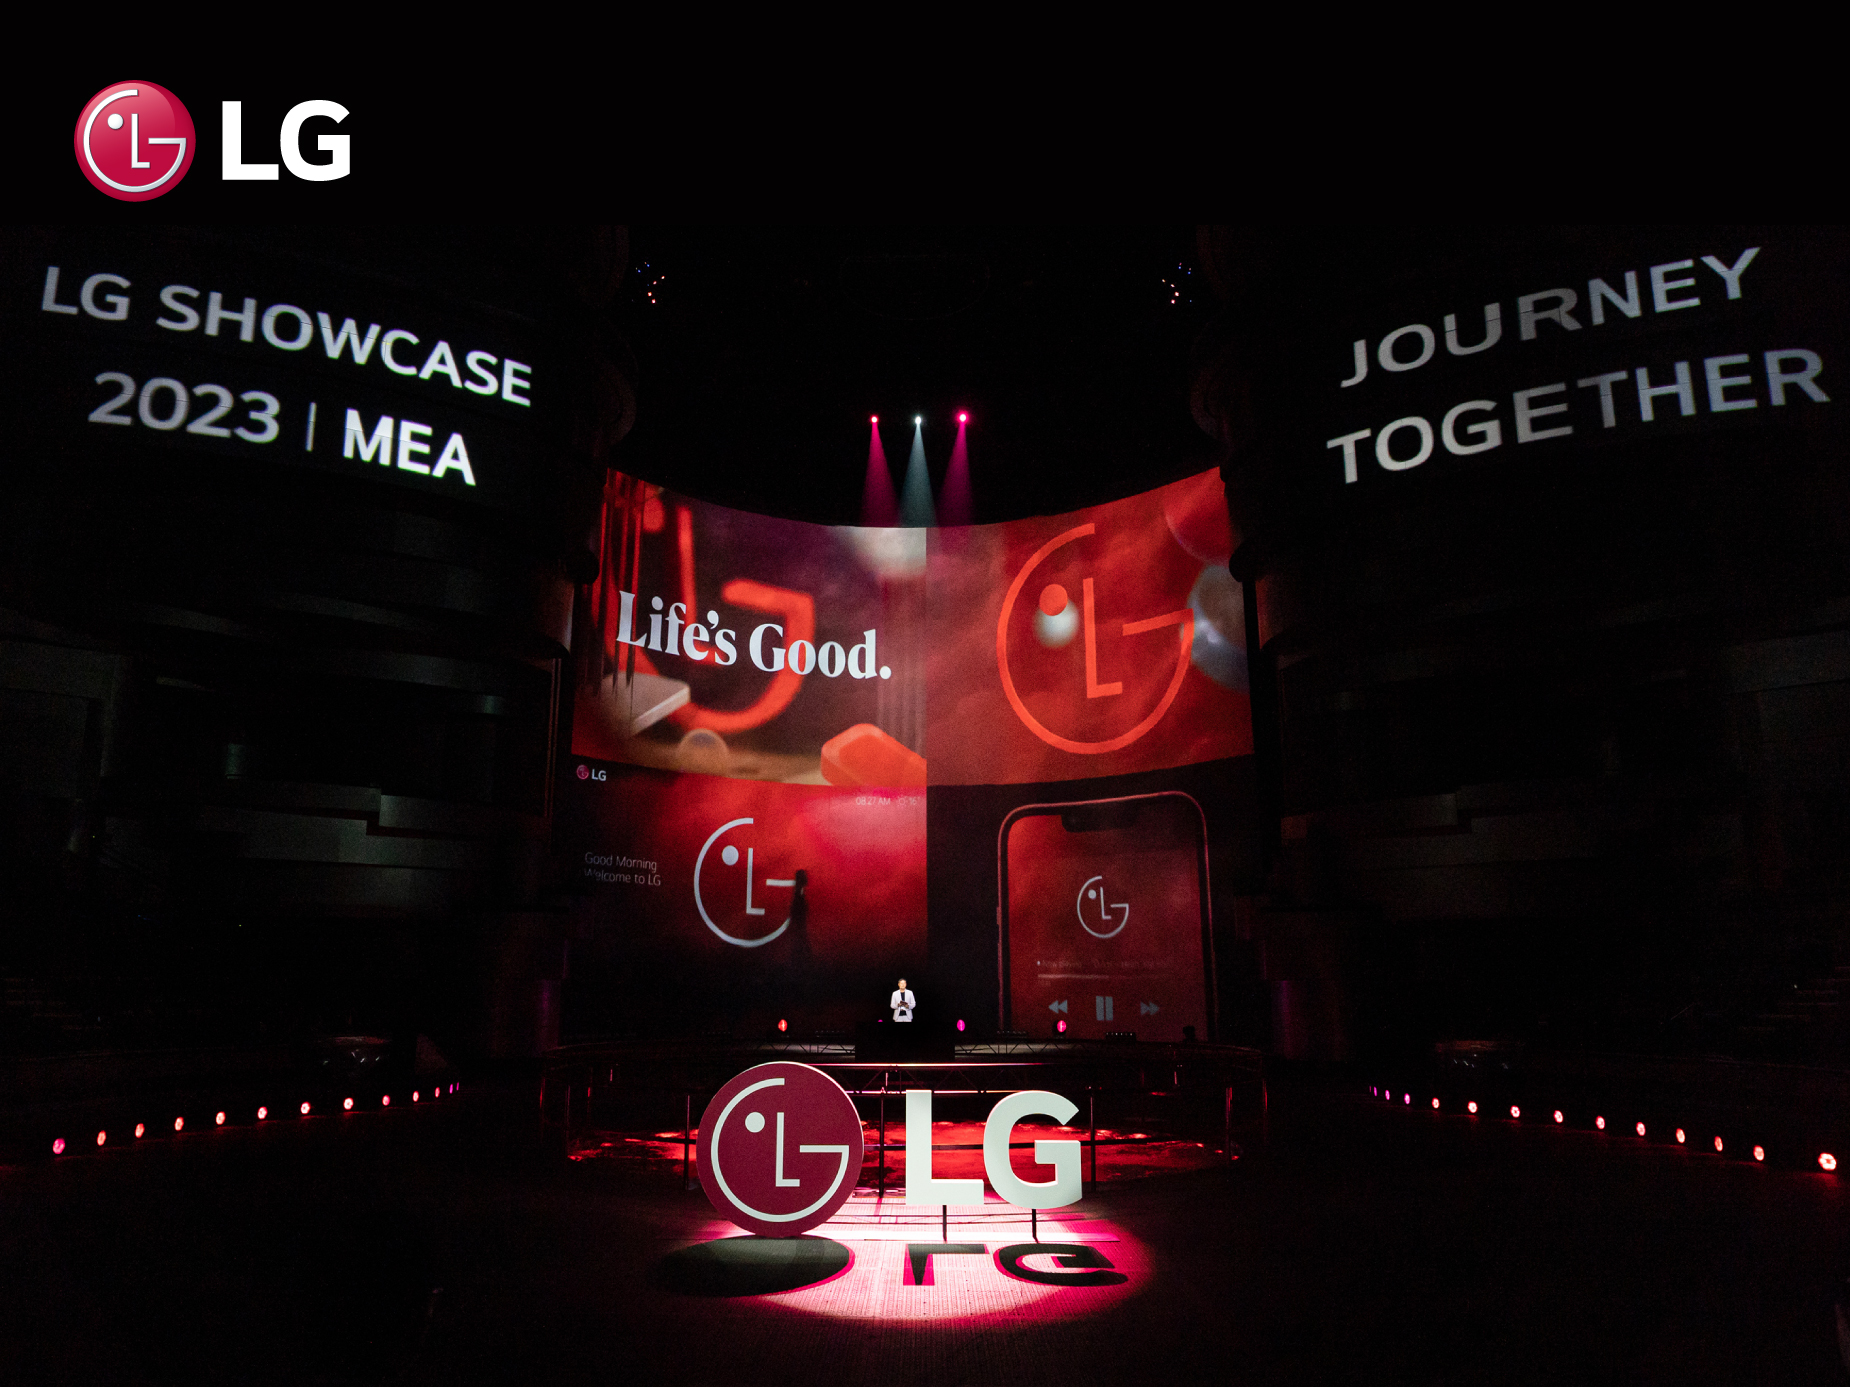 LG_showcase_resized